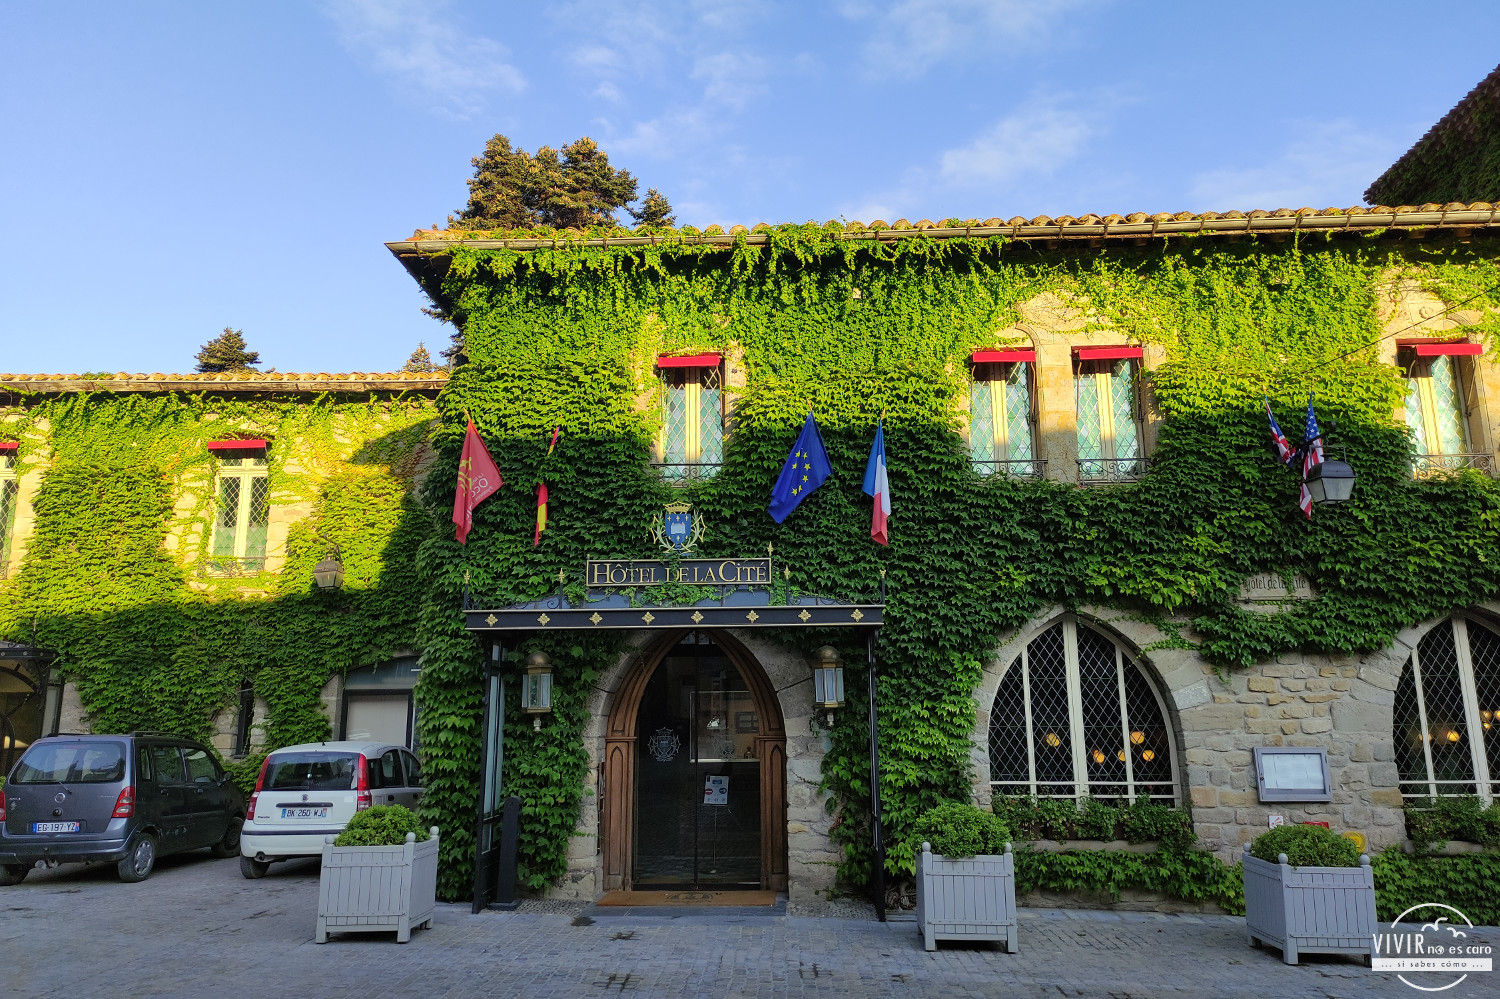 Fachada del Hotel La Cité en el interior de Carcassonne